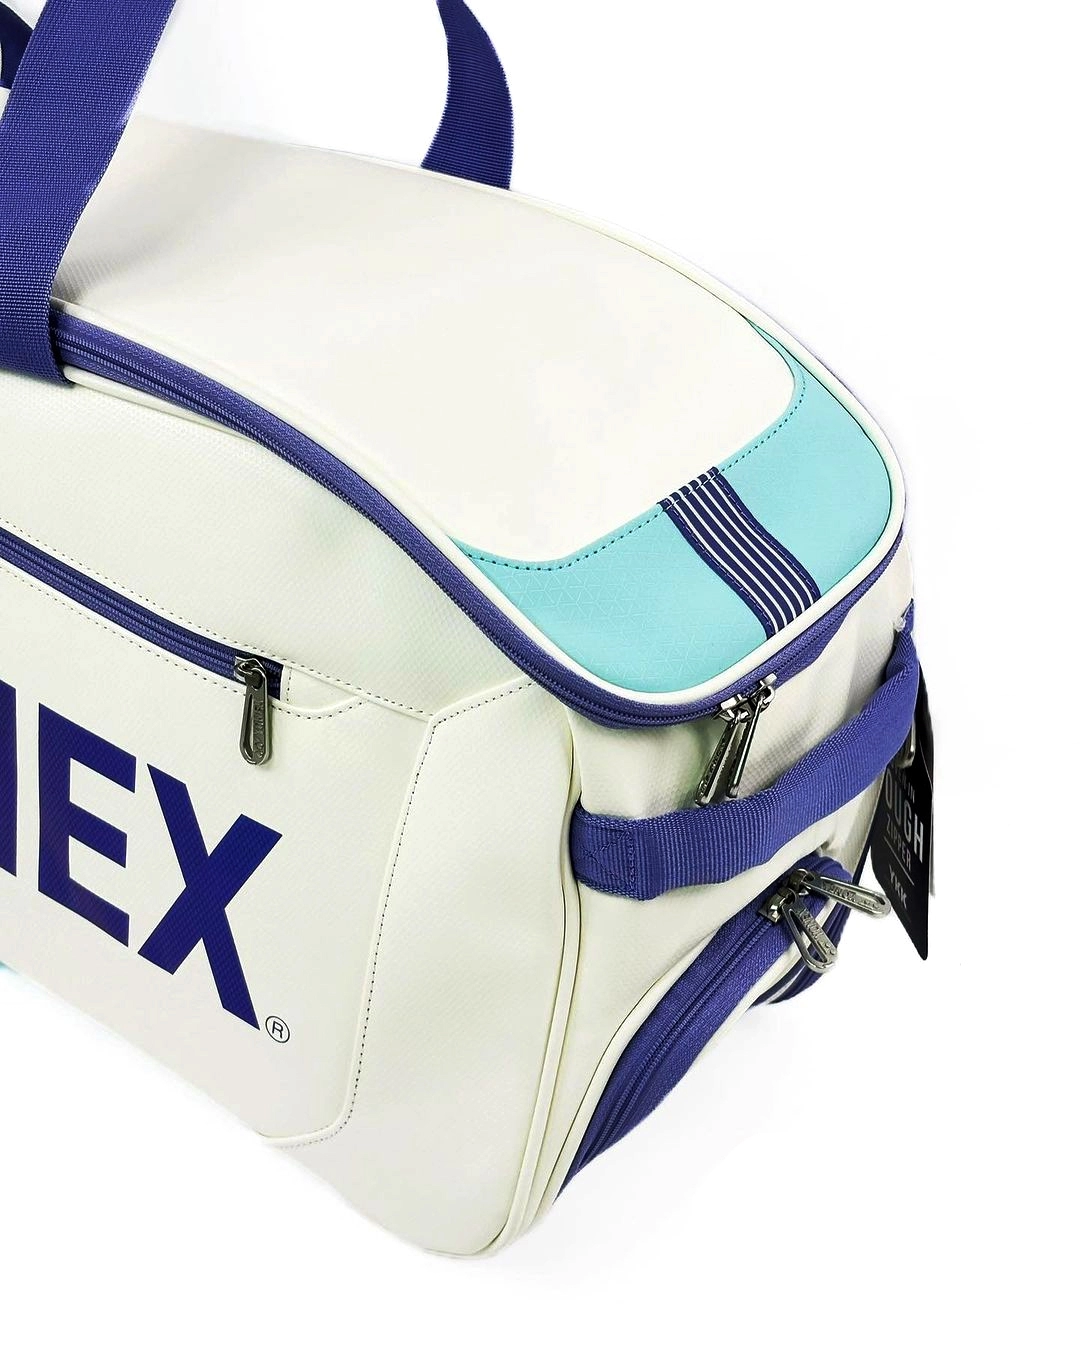 Túi cầu lông Yonex Ba02331 WEX Xanh trắng tím - Gia công